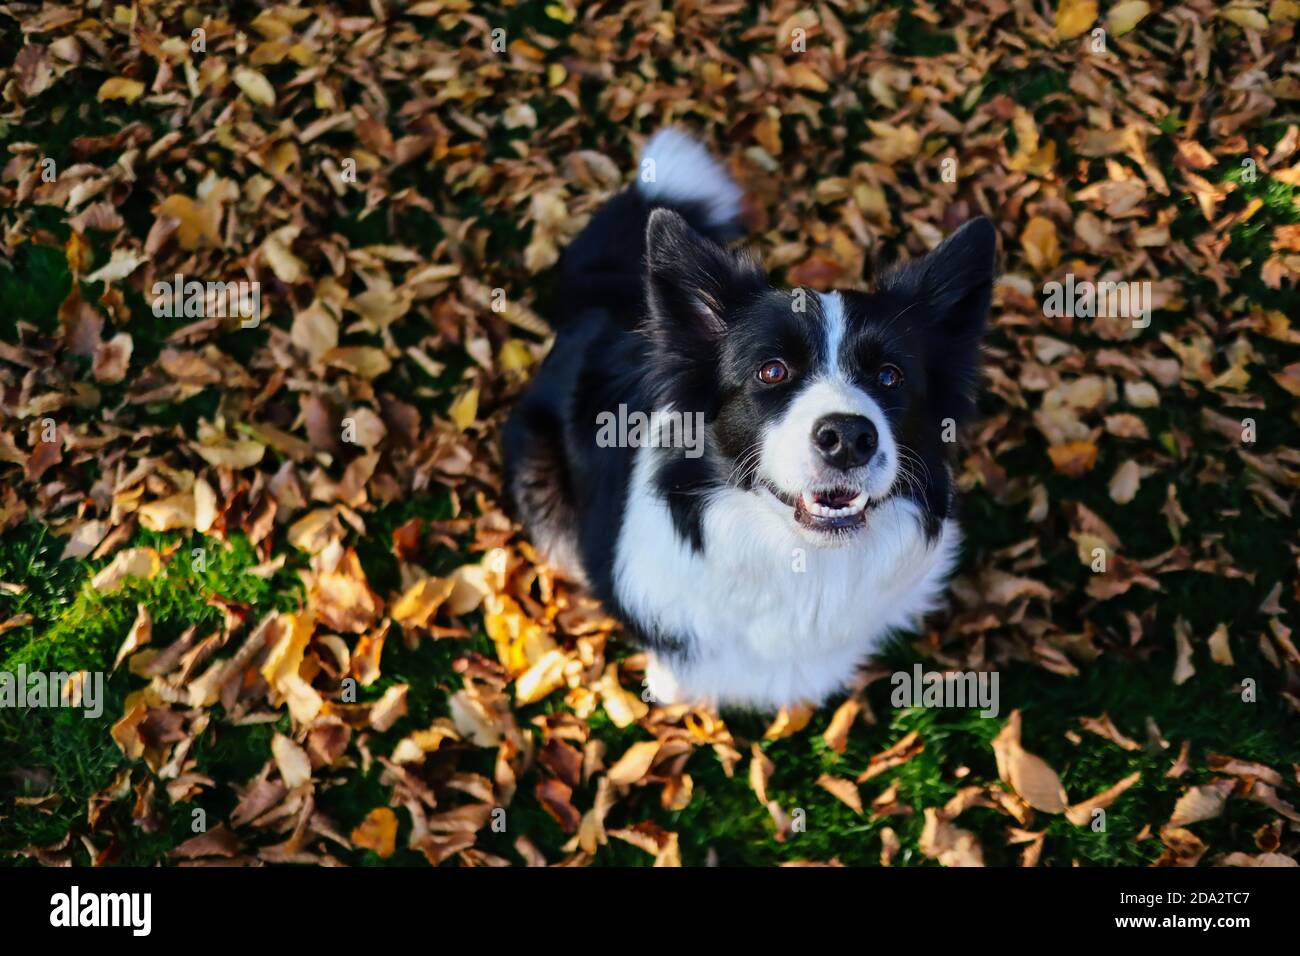 Draufsicht auf lächelnde Border Collie Sitting Down on Fallen Autumn Leaves during Sunny Day. Top-Down-Bild von Schwarz und Weiß Happy Dog in der Herbstsaison. Stockfoto